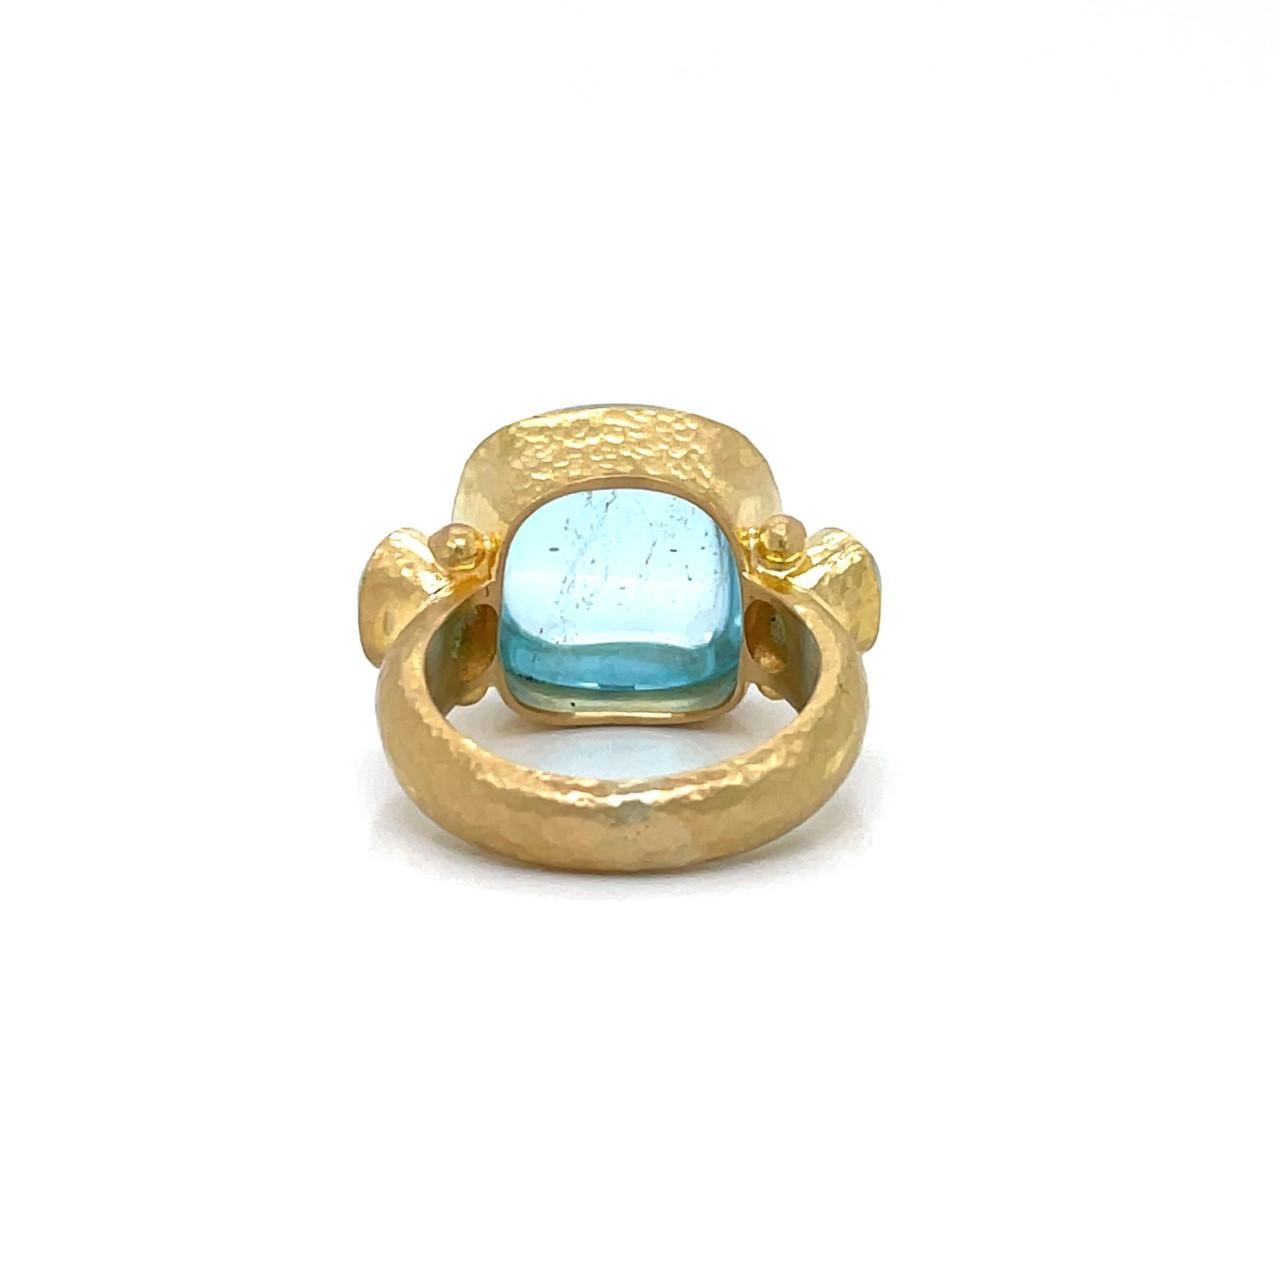 Elizabeth Locke 19k Yellow Gold Three Stone Ring with Cabochon Cut Aquamarines 1